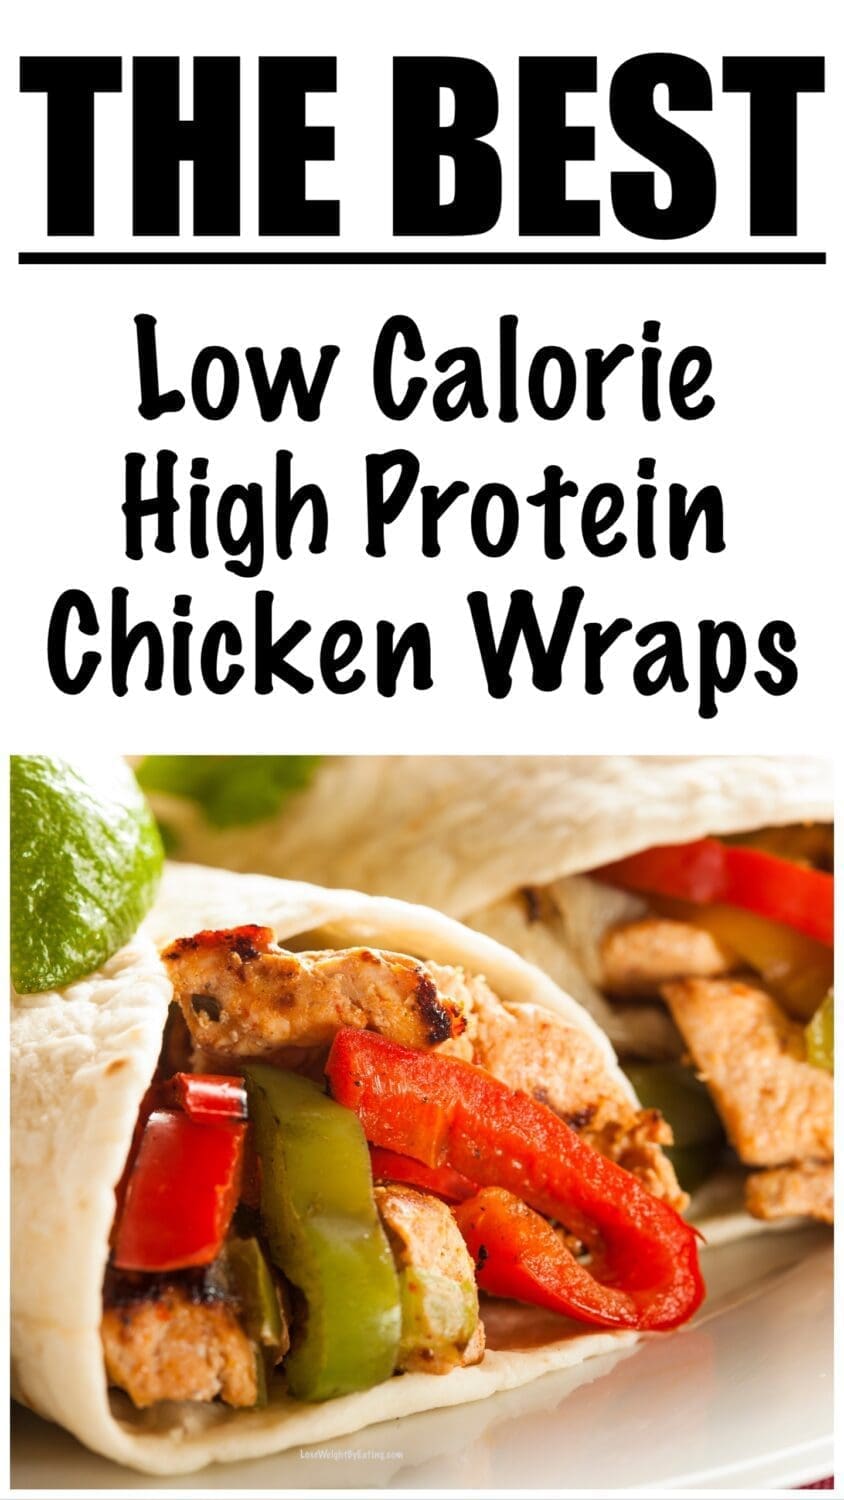 High Protein Wraps